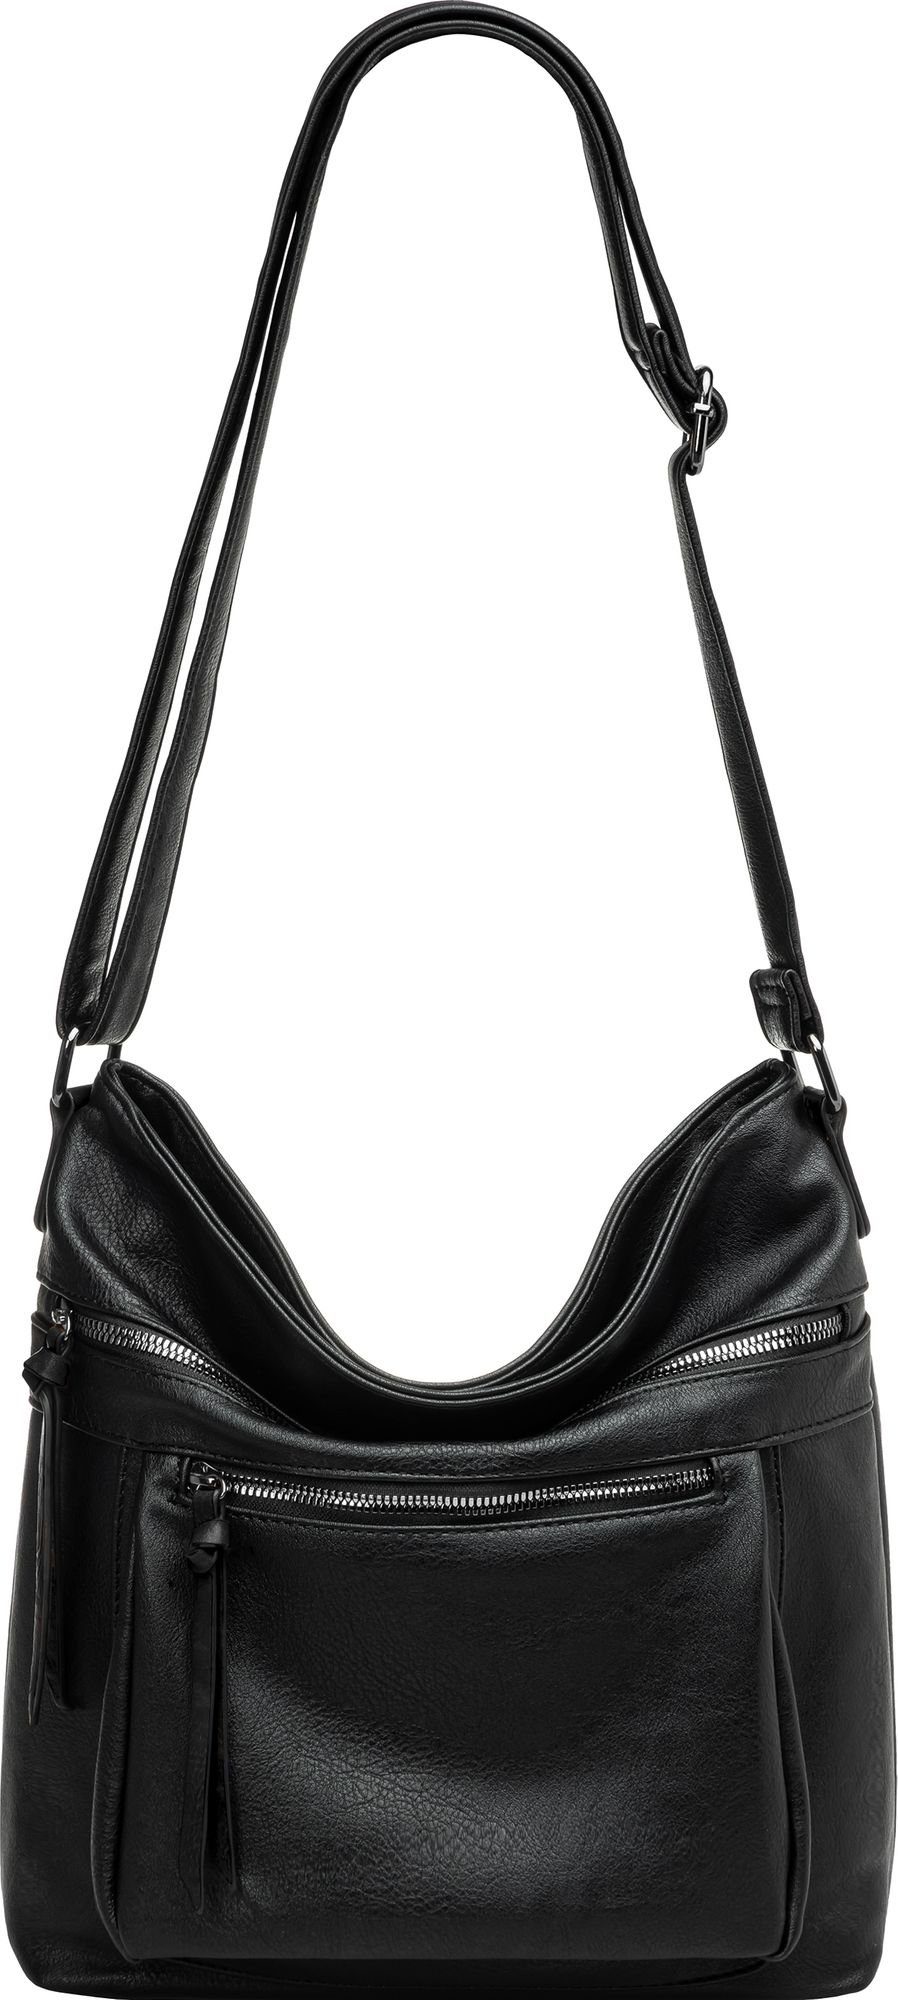 Caspar Umhängetasche TS1070 mittelgroße elegante Crossbody Bag sportlich Umhängetasche Damen schwarz